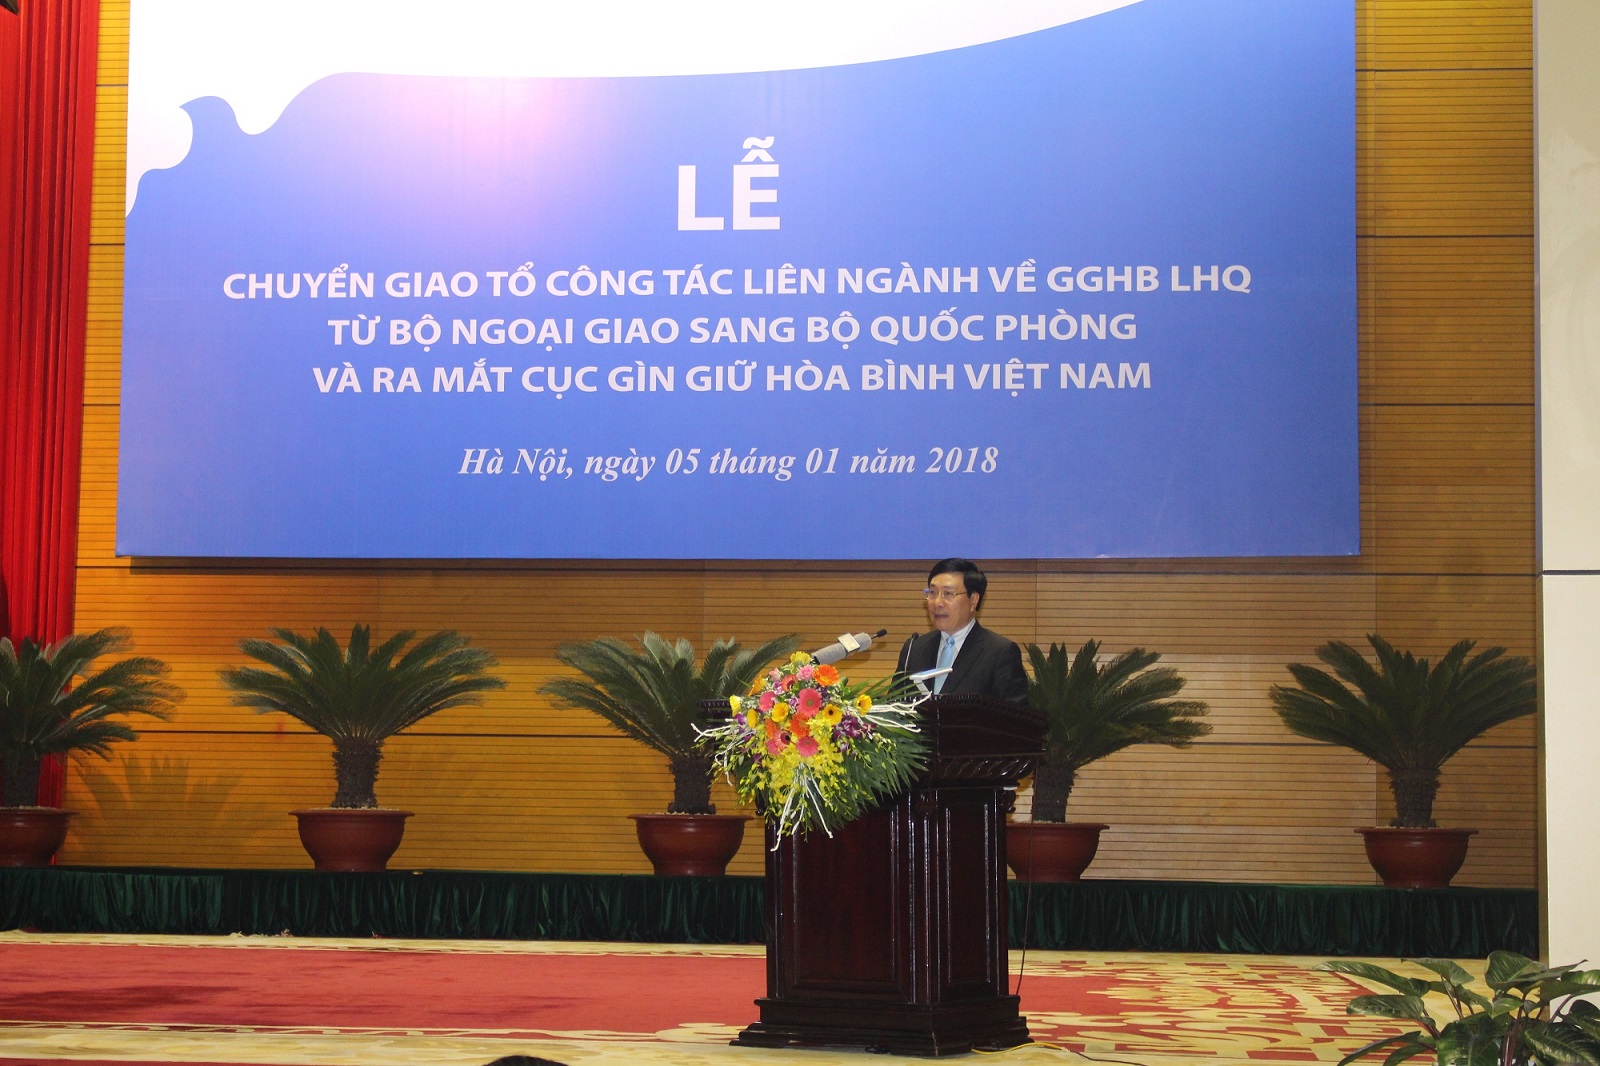 Đồng chí Phạm Bình Minh, Ủy viên Bộ Chính trị, Phó Thủ tướng Chính phủ, Bộ trưởng Bộ Ngoại giao, phát biểu tại Lễ ra mắt Cục GGHB Việt Nam ngày 5/01/2018.